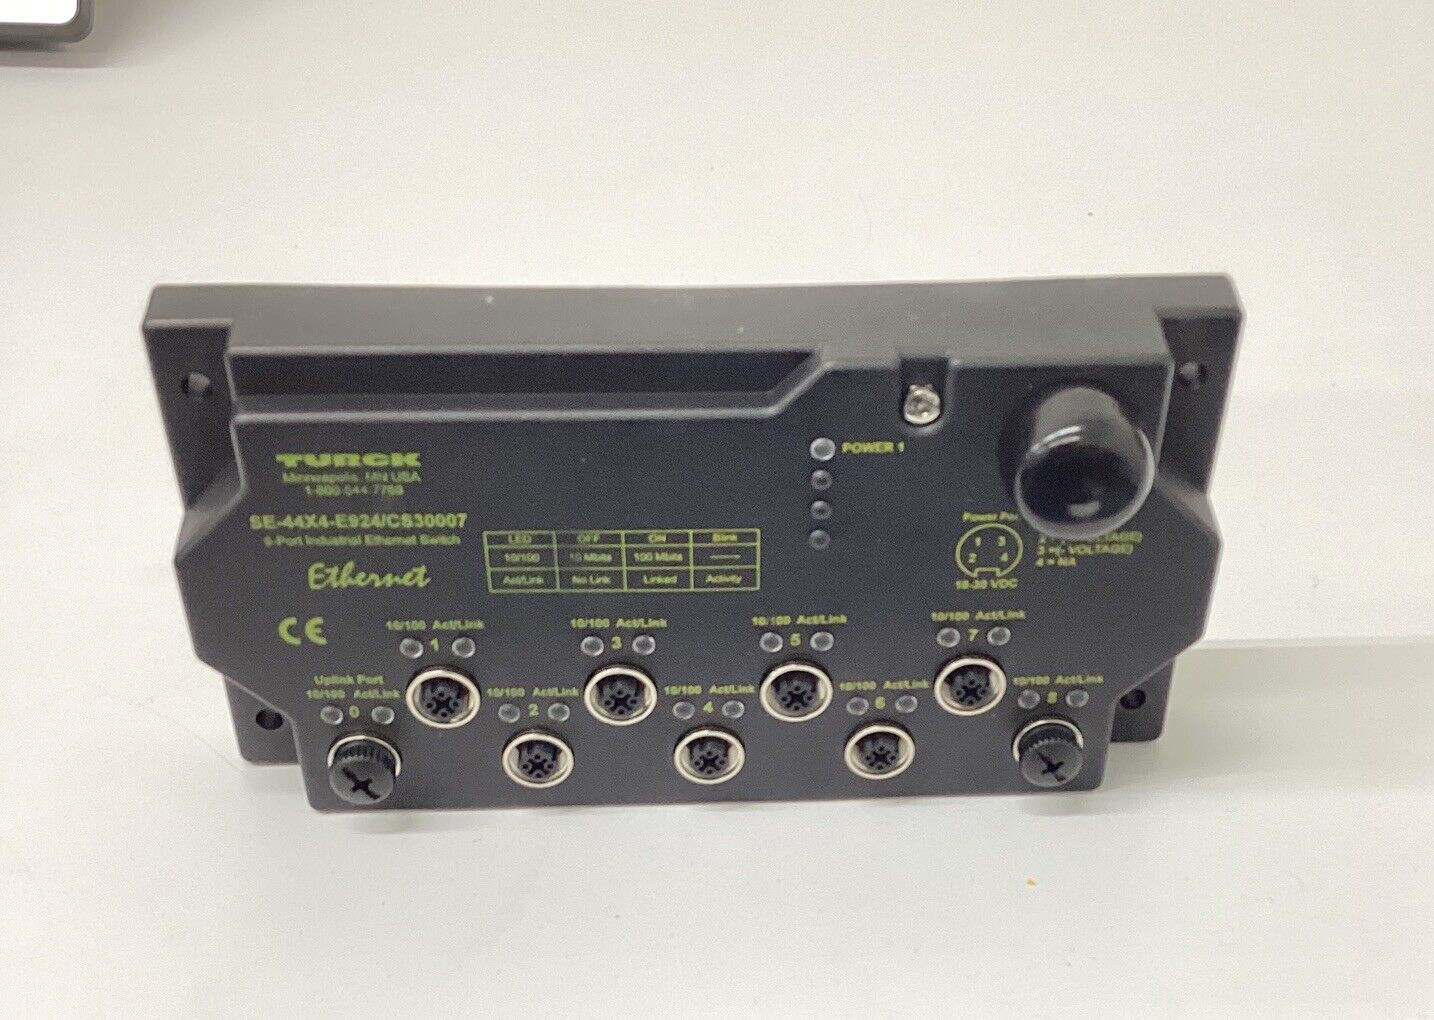 Turck SE-44X4-E924/CS30007 / U3-10813 9-Port Ethernet Module (SH107)